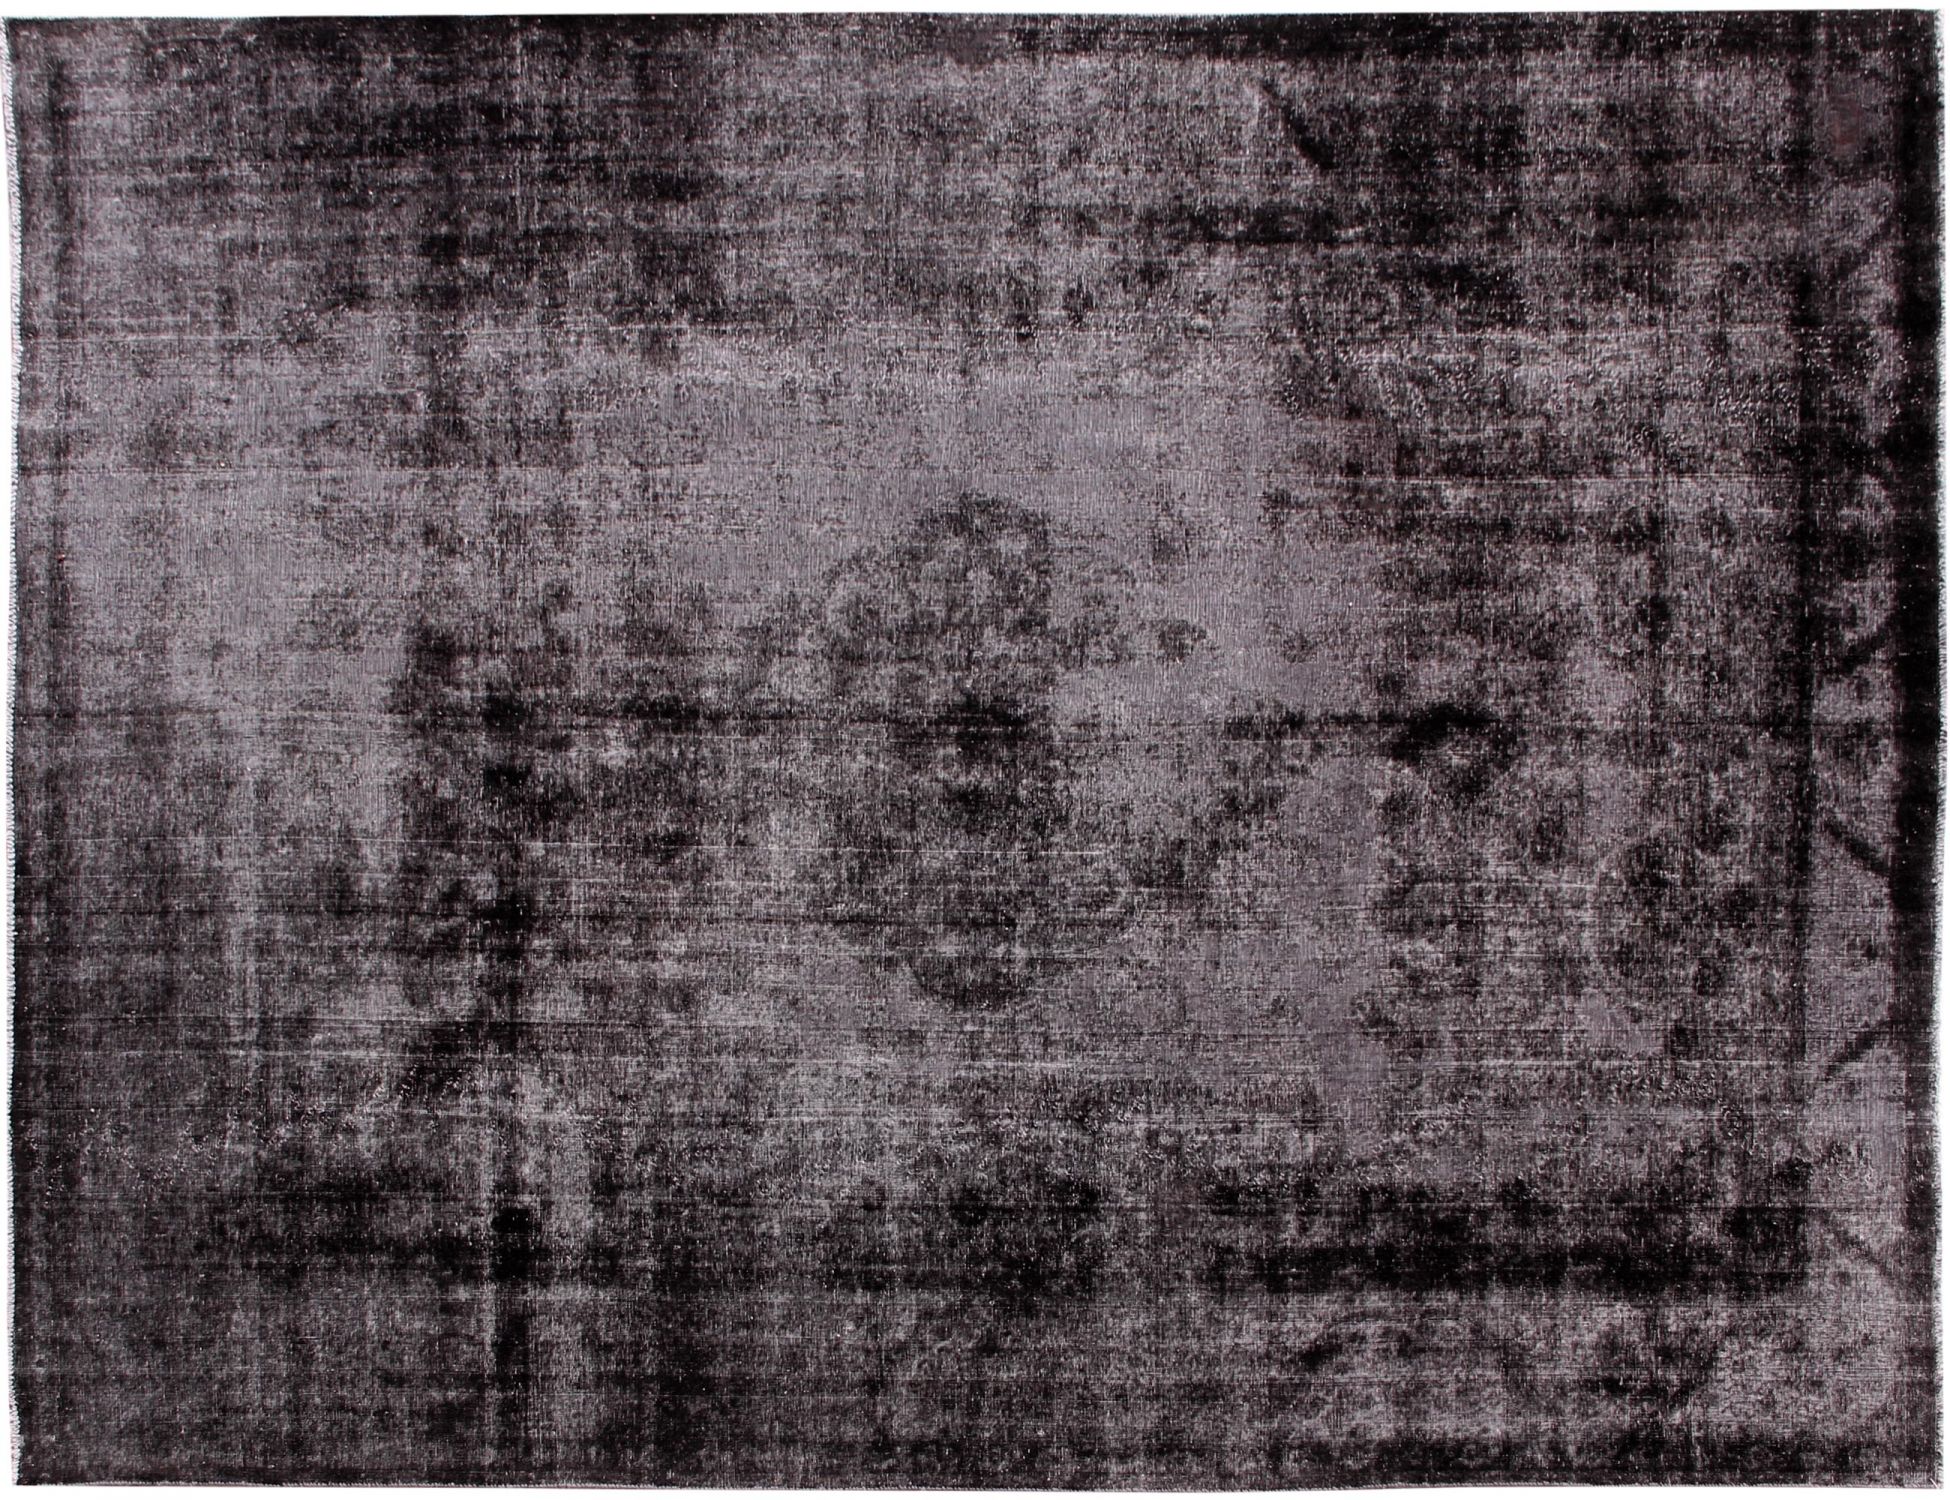 Persischer Vintage Teppich  schwarz <br/>407 x 310 cm